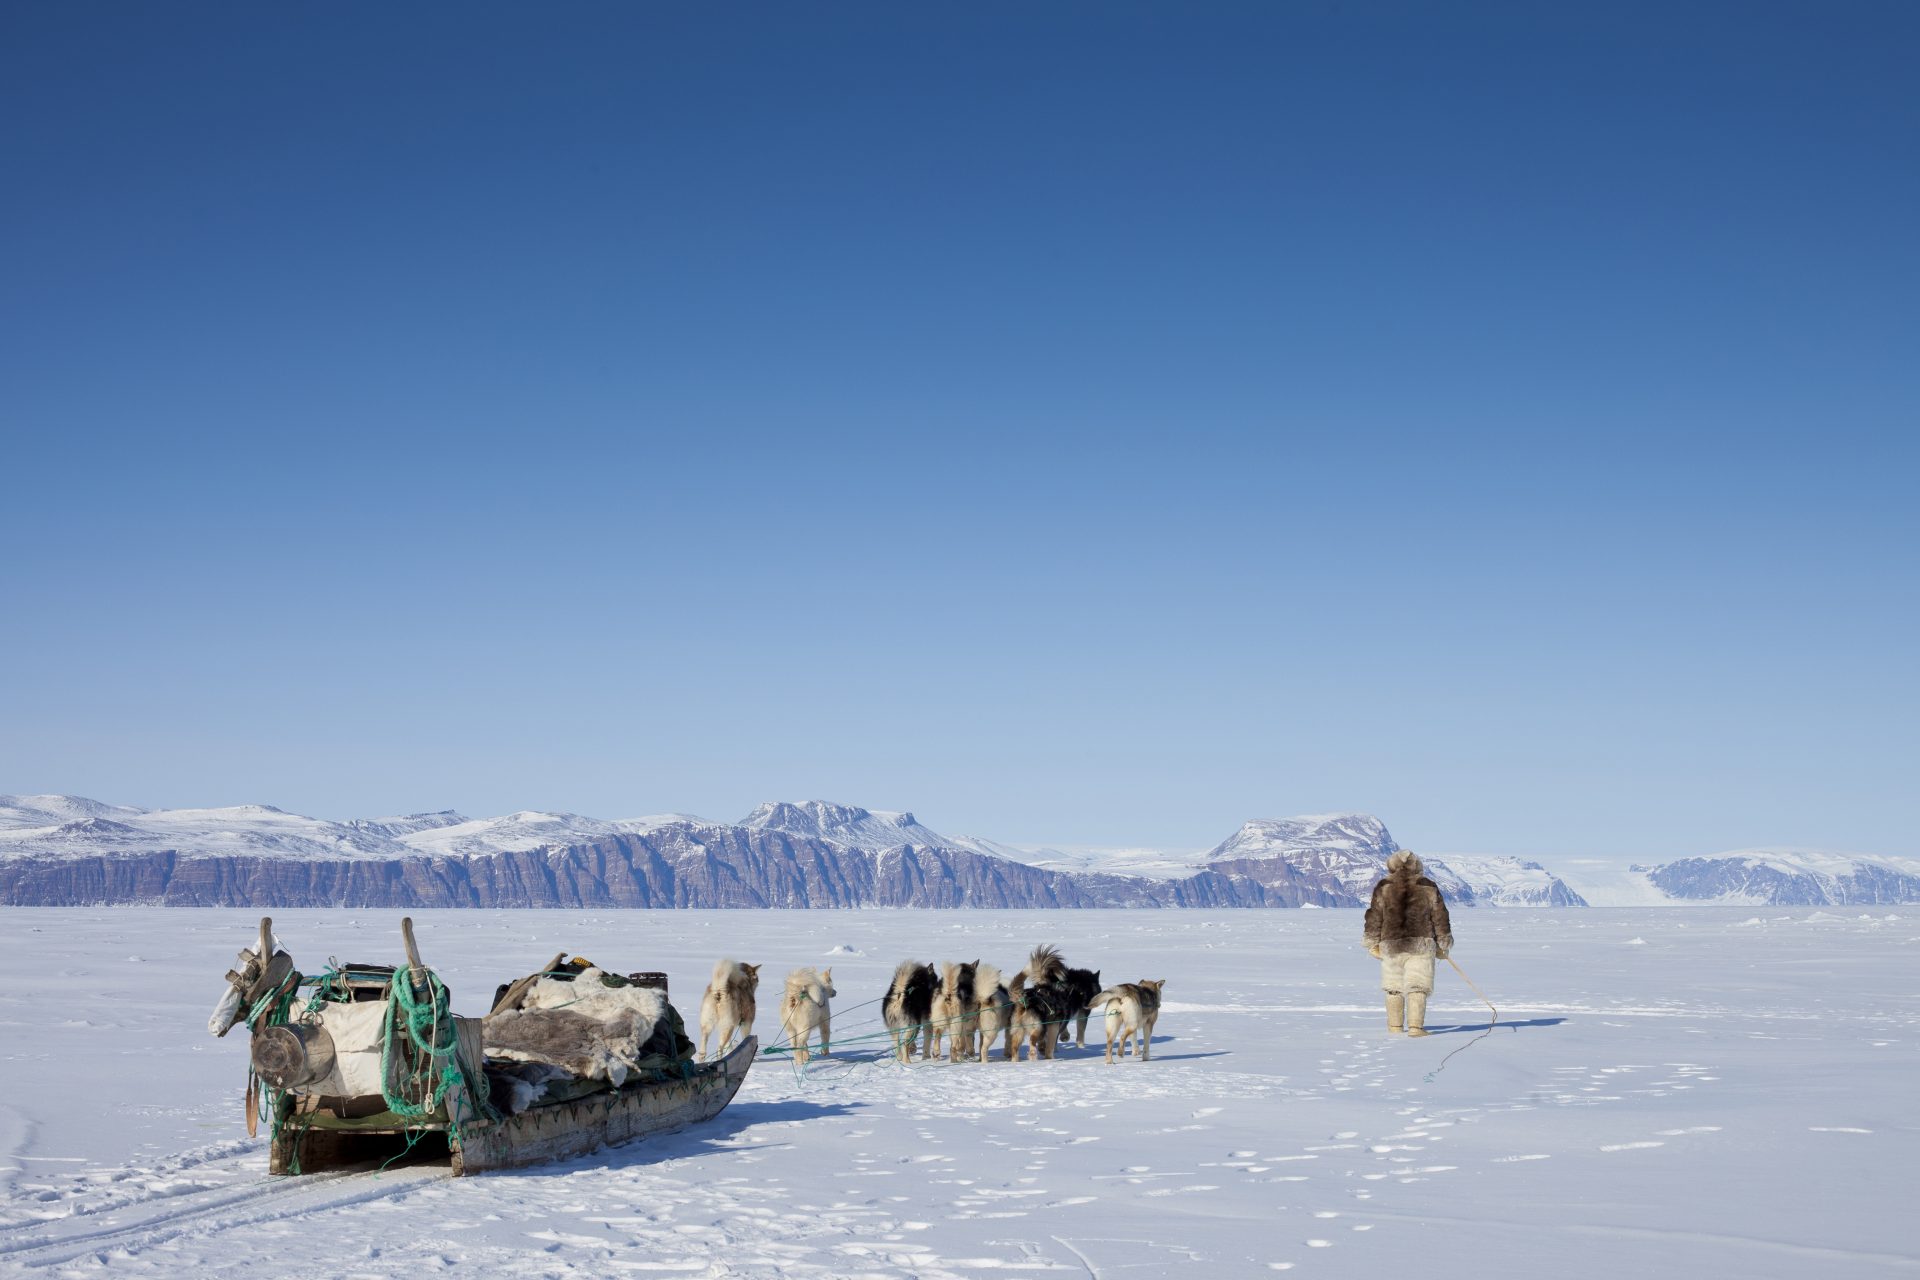 Voici comment vivent les Inuits, ces peuples de l'Arctique adaptés aux hivers extrêmes